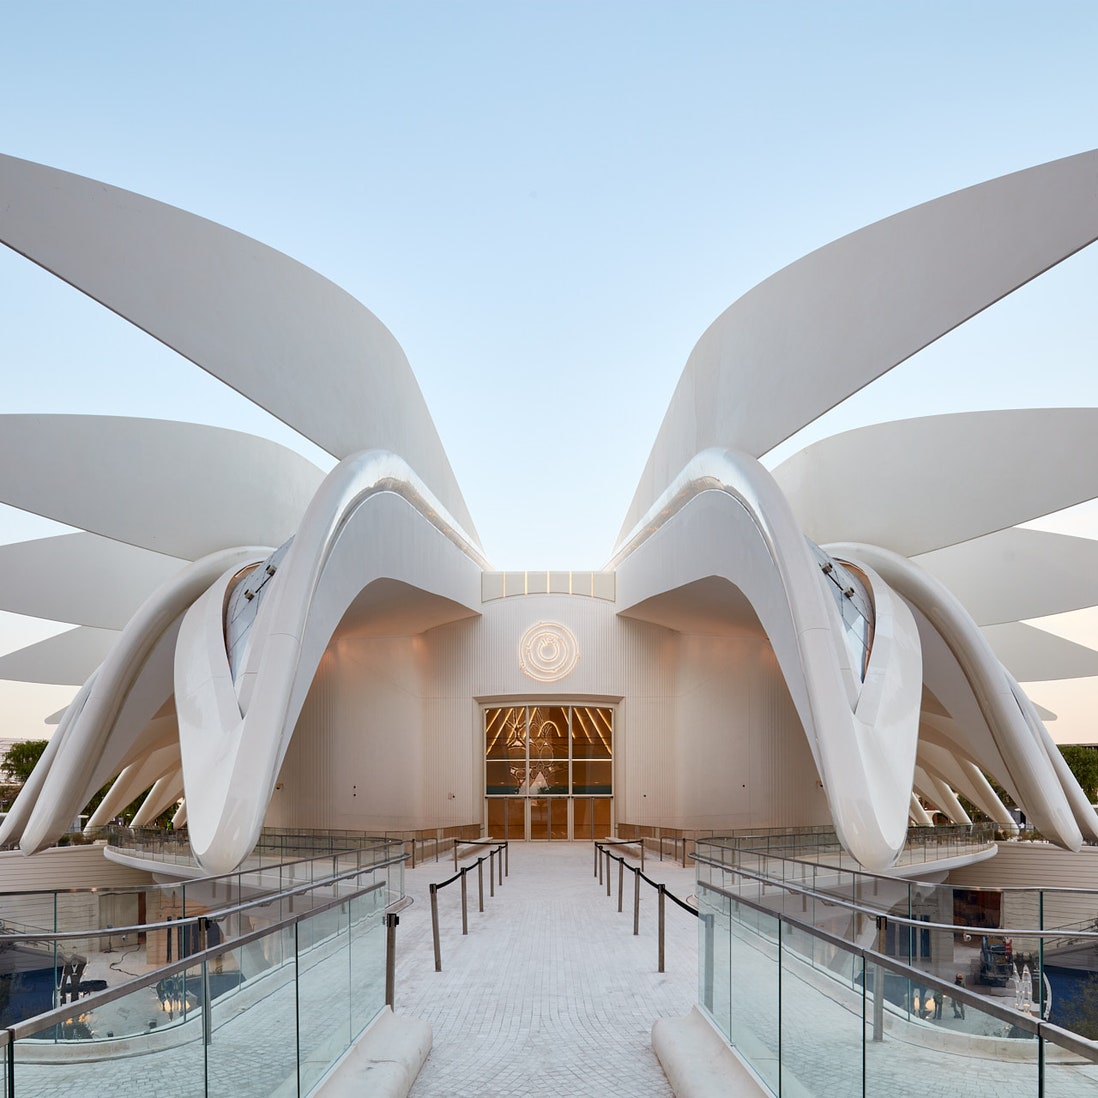 Павильон по проекту Сантьяго Калатравы на выставке Экспо2020 в Дубае